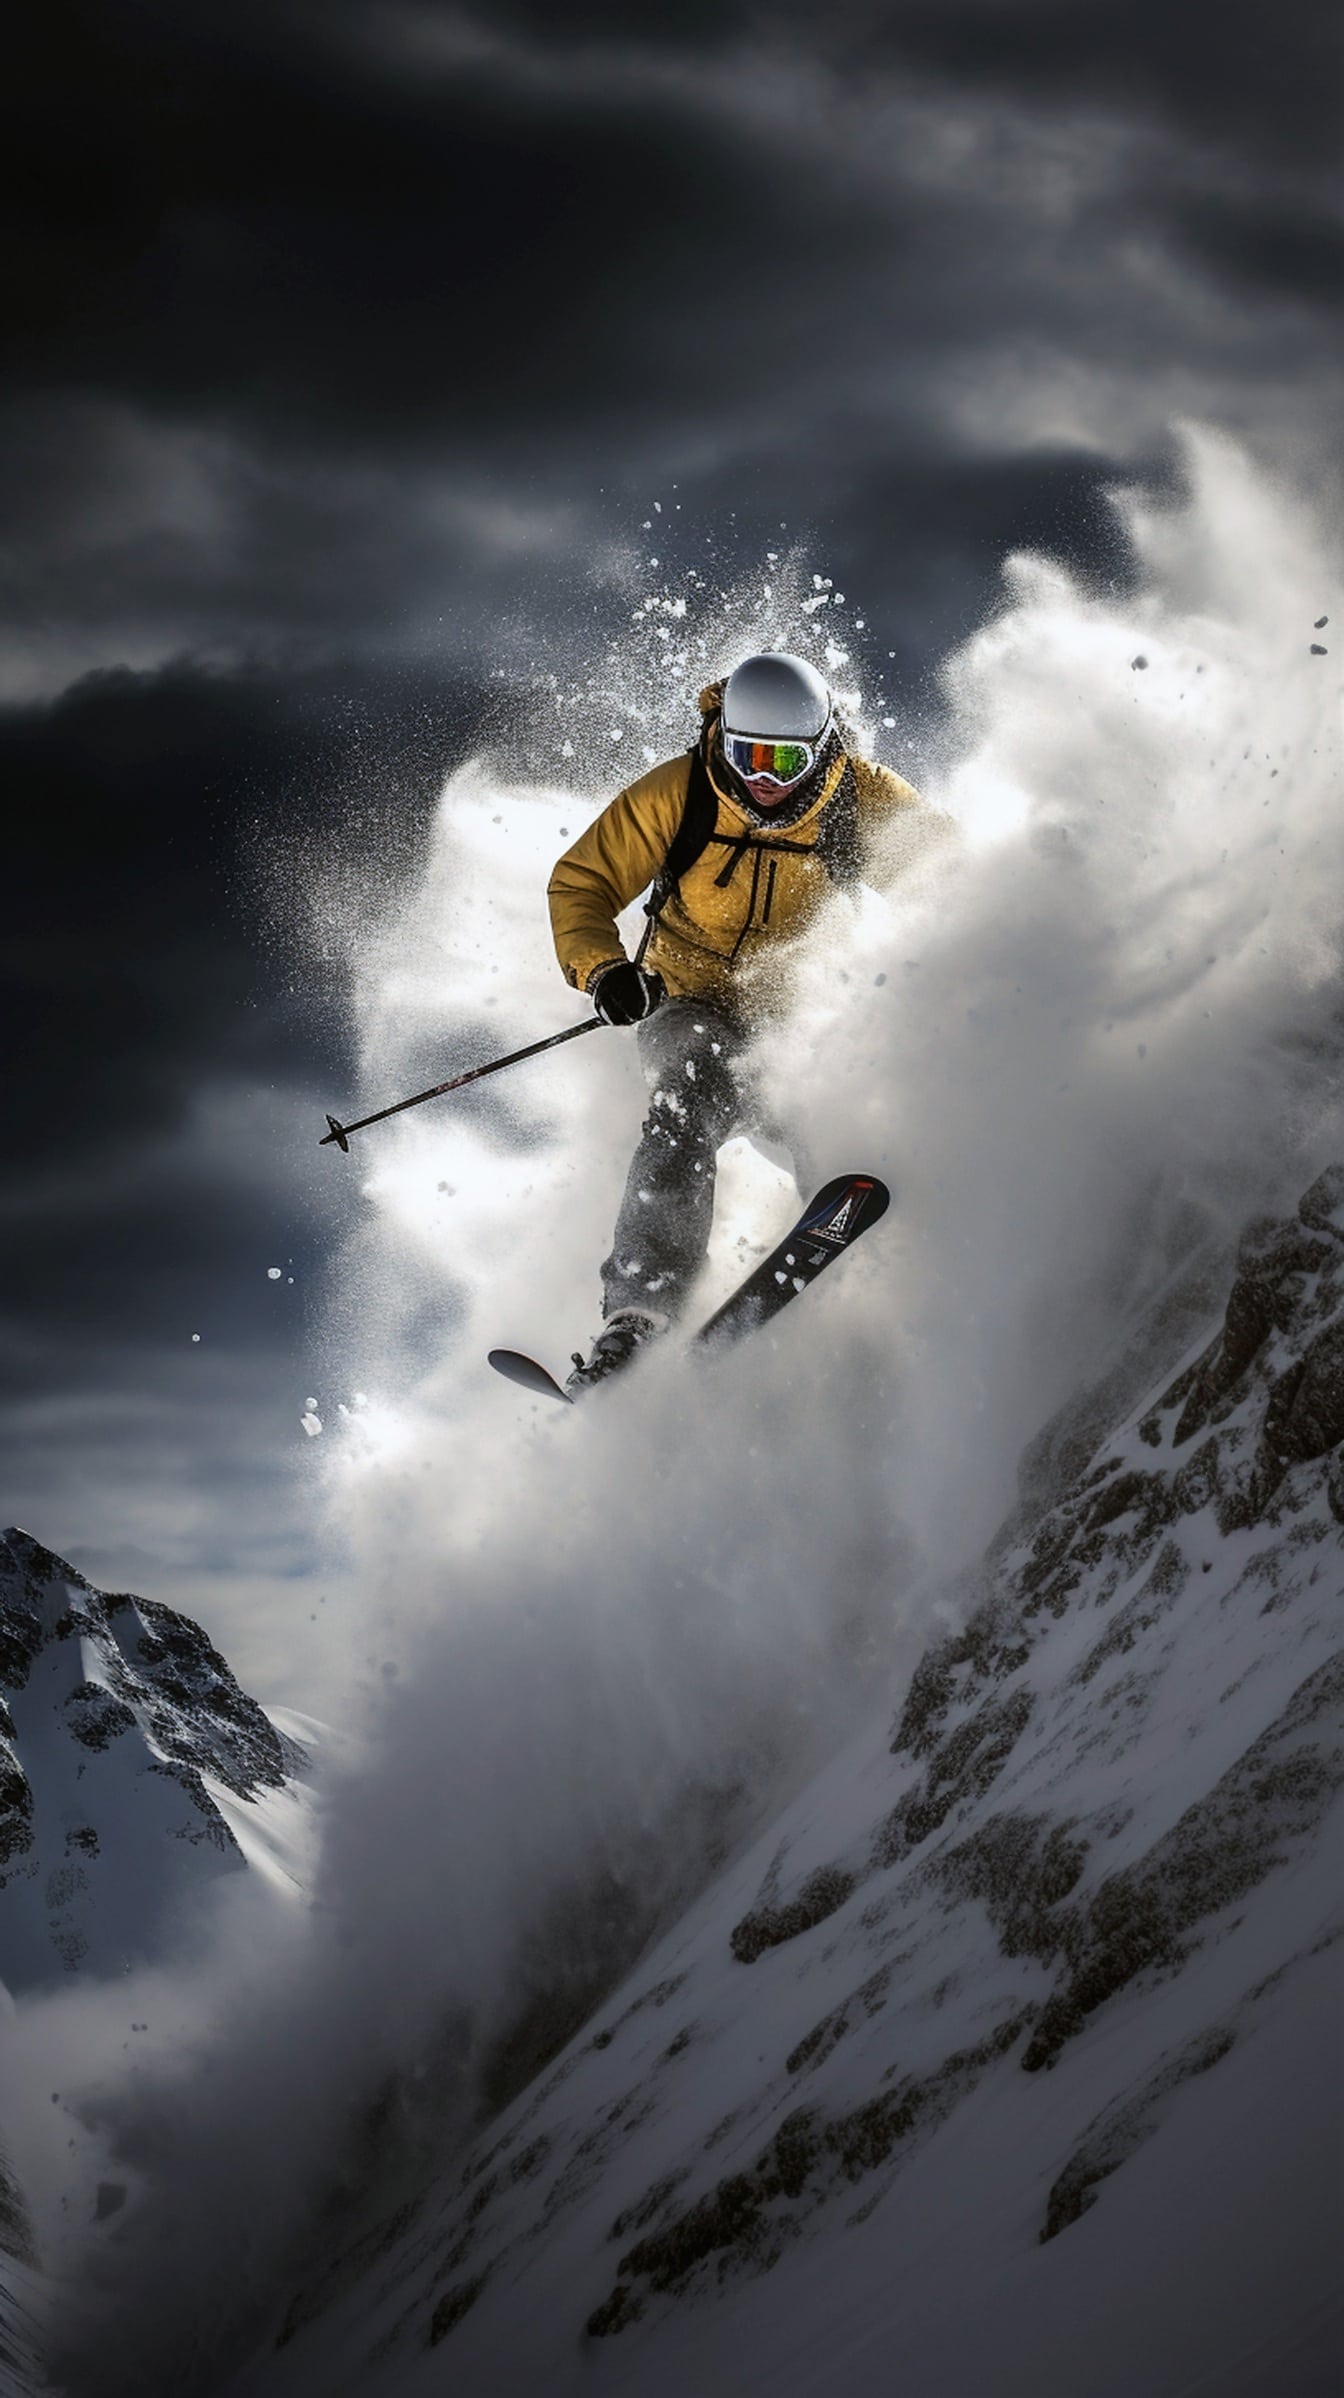 Narciarz w żółtawo-brązowej kurtce skaczący z zaśnieżonego klifu